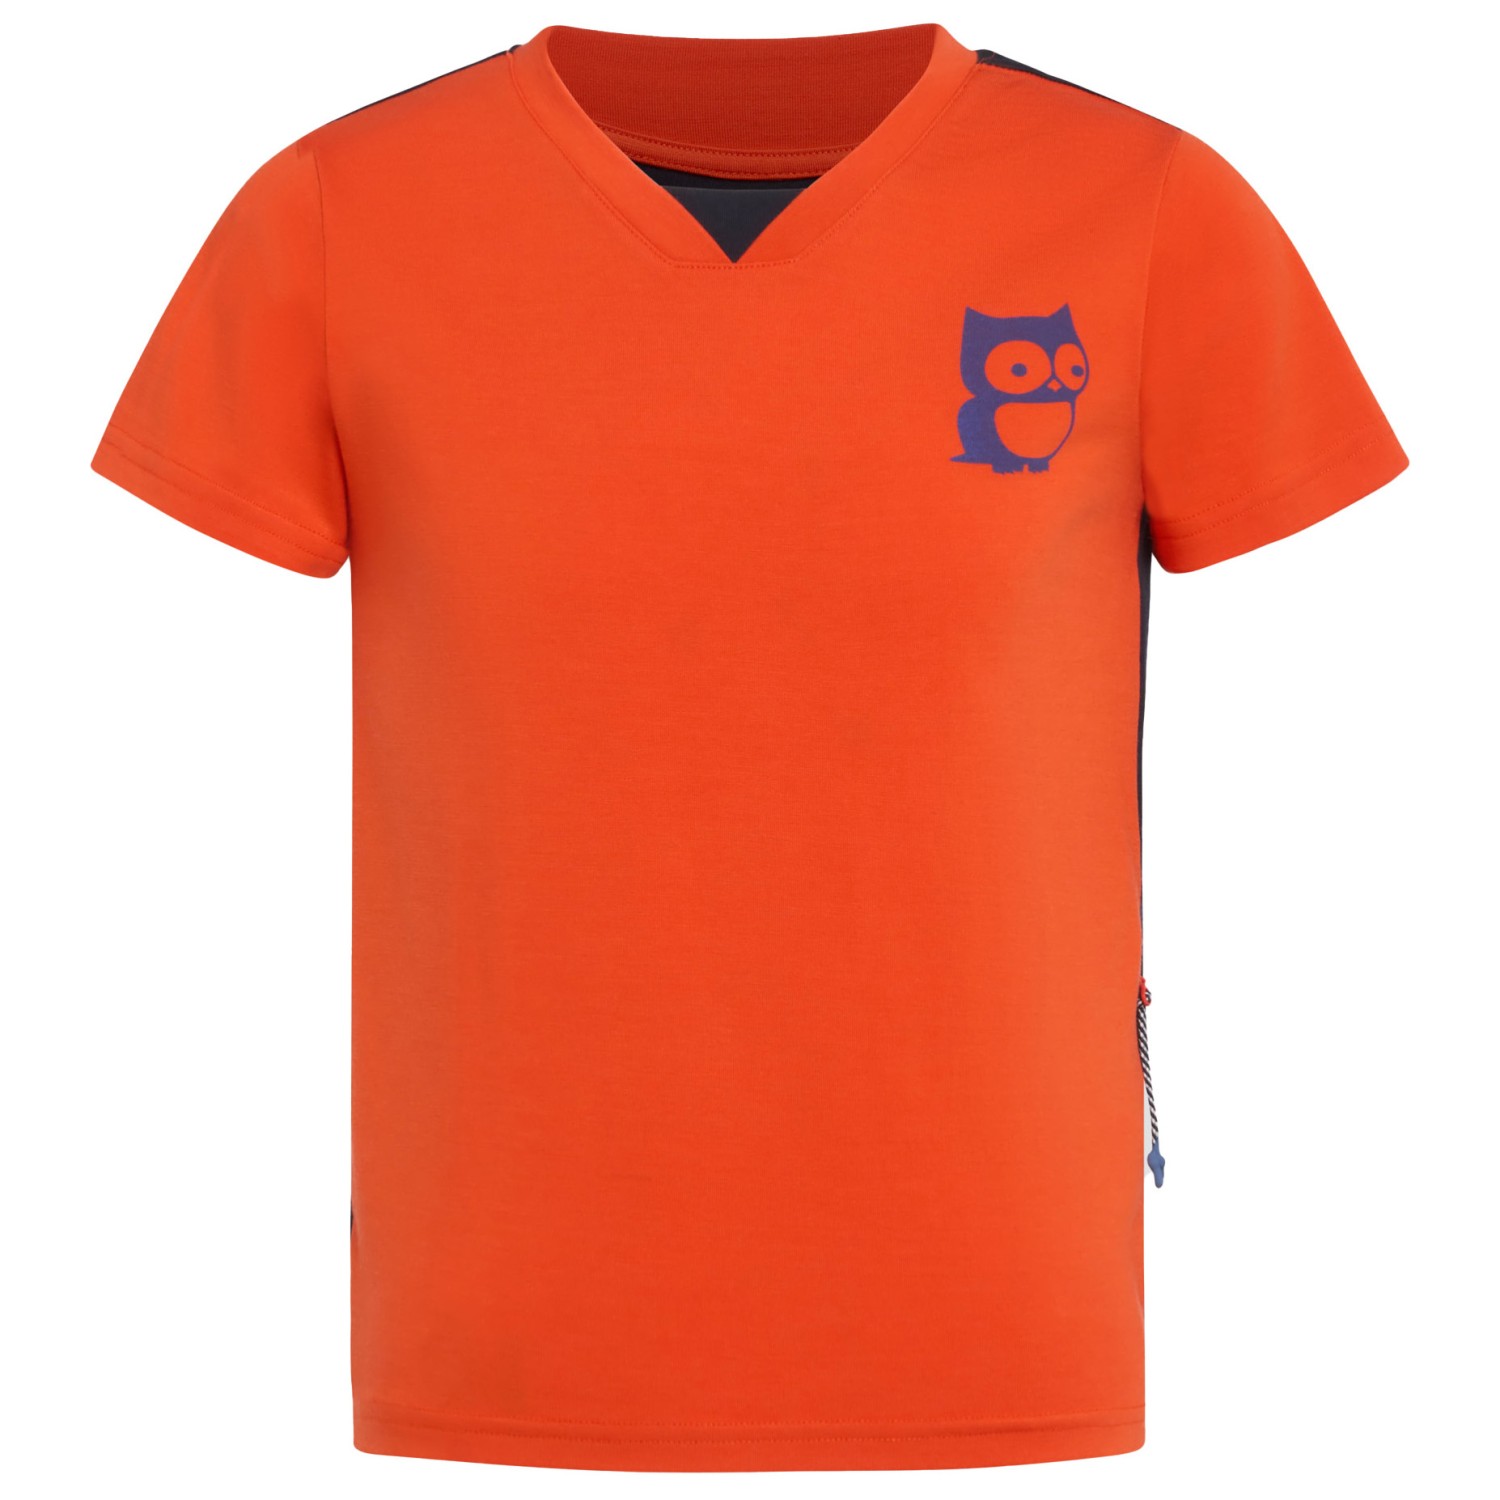 Рубашка из мериноса Namuk Kid's Daft Merino Bike T Shirt, цвет Red Orange/True Navy